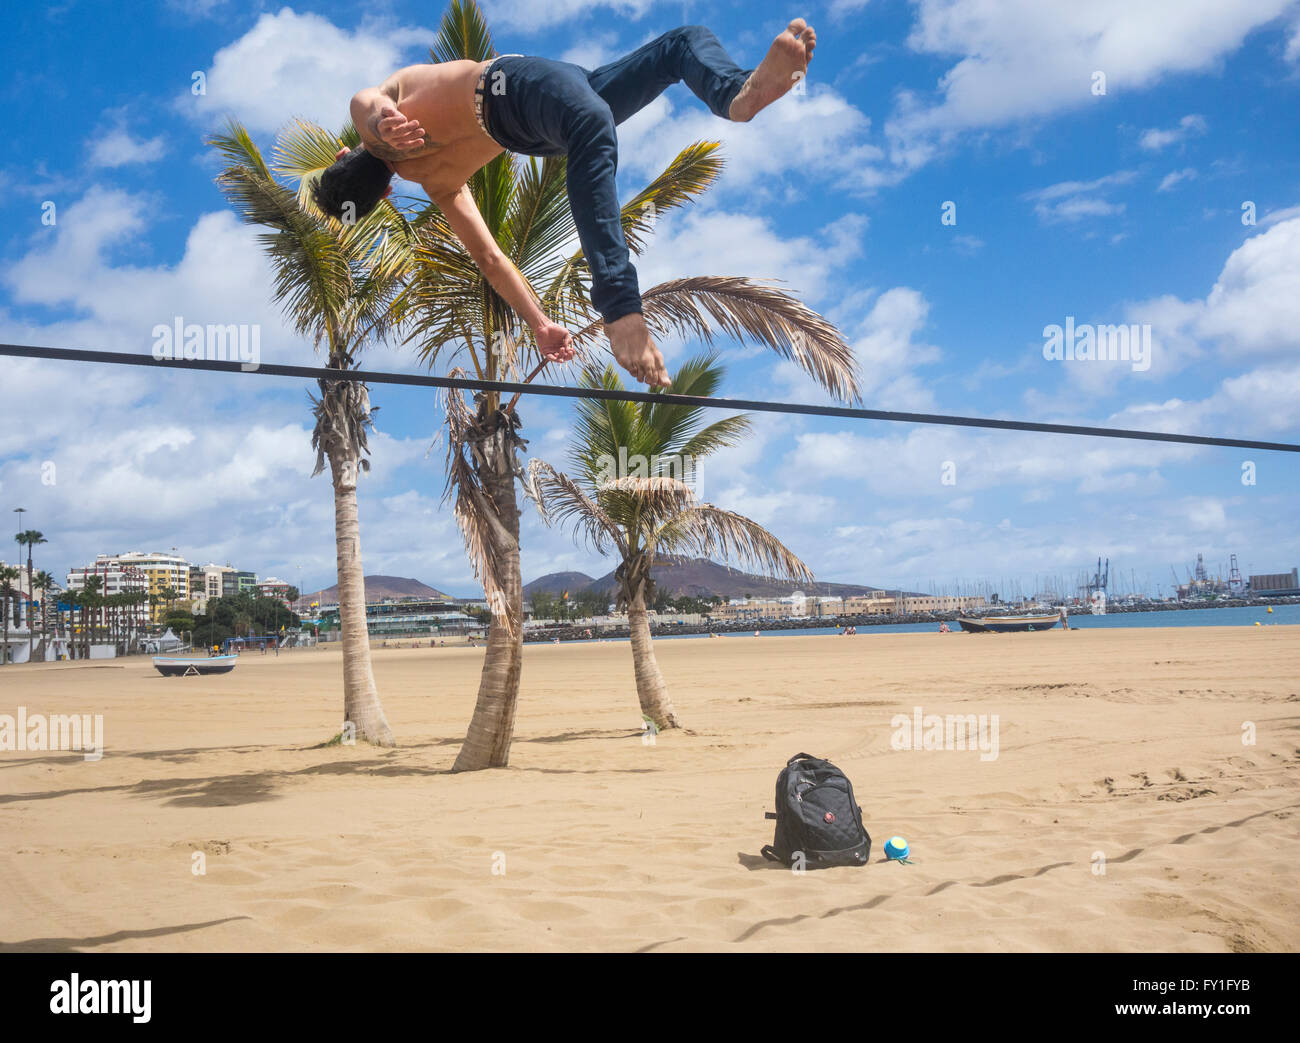 El hombre realizar volteretas y gimnasia desmonta en slackline atadas entre árboles de Plam Beach en España Foto de stock